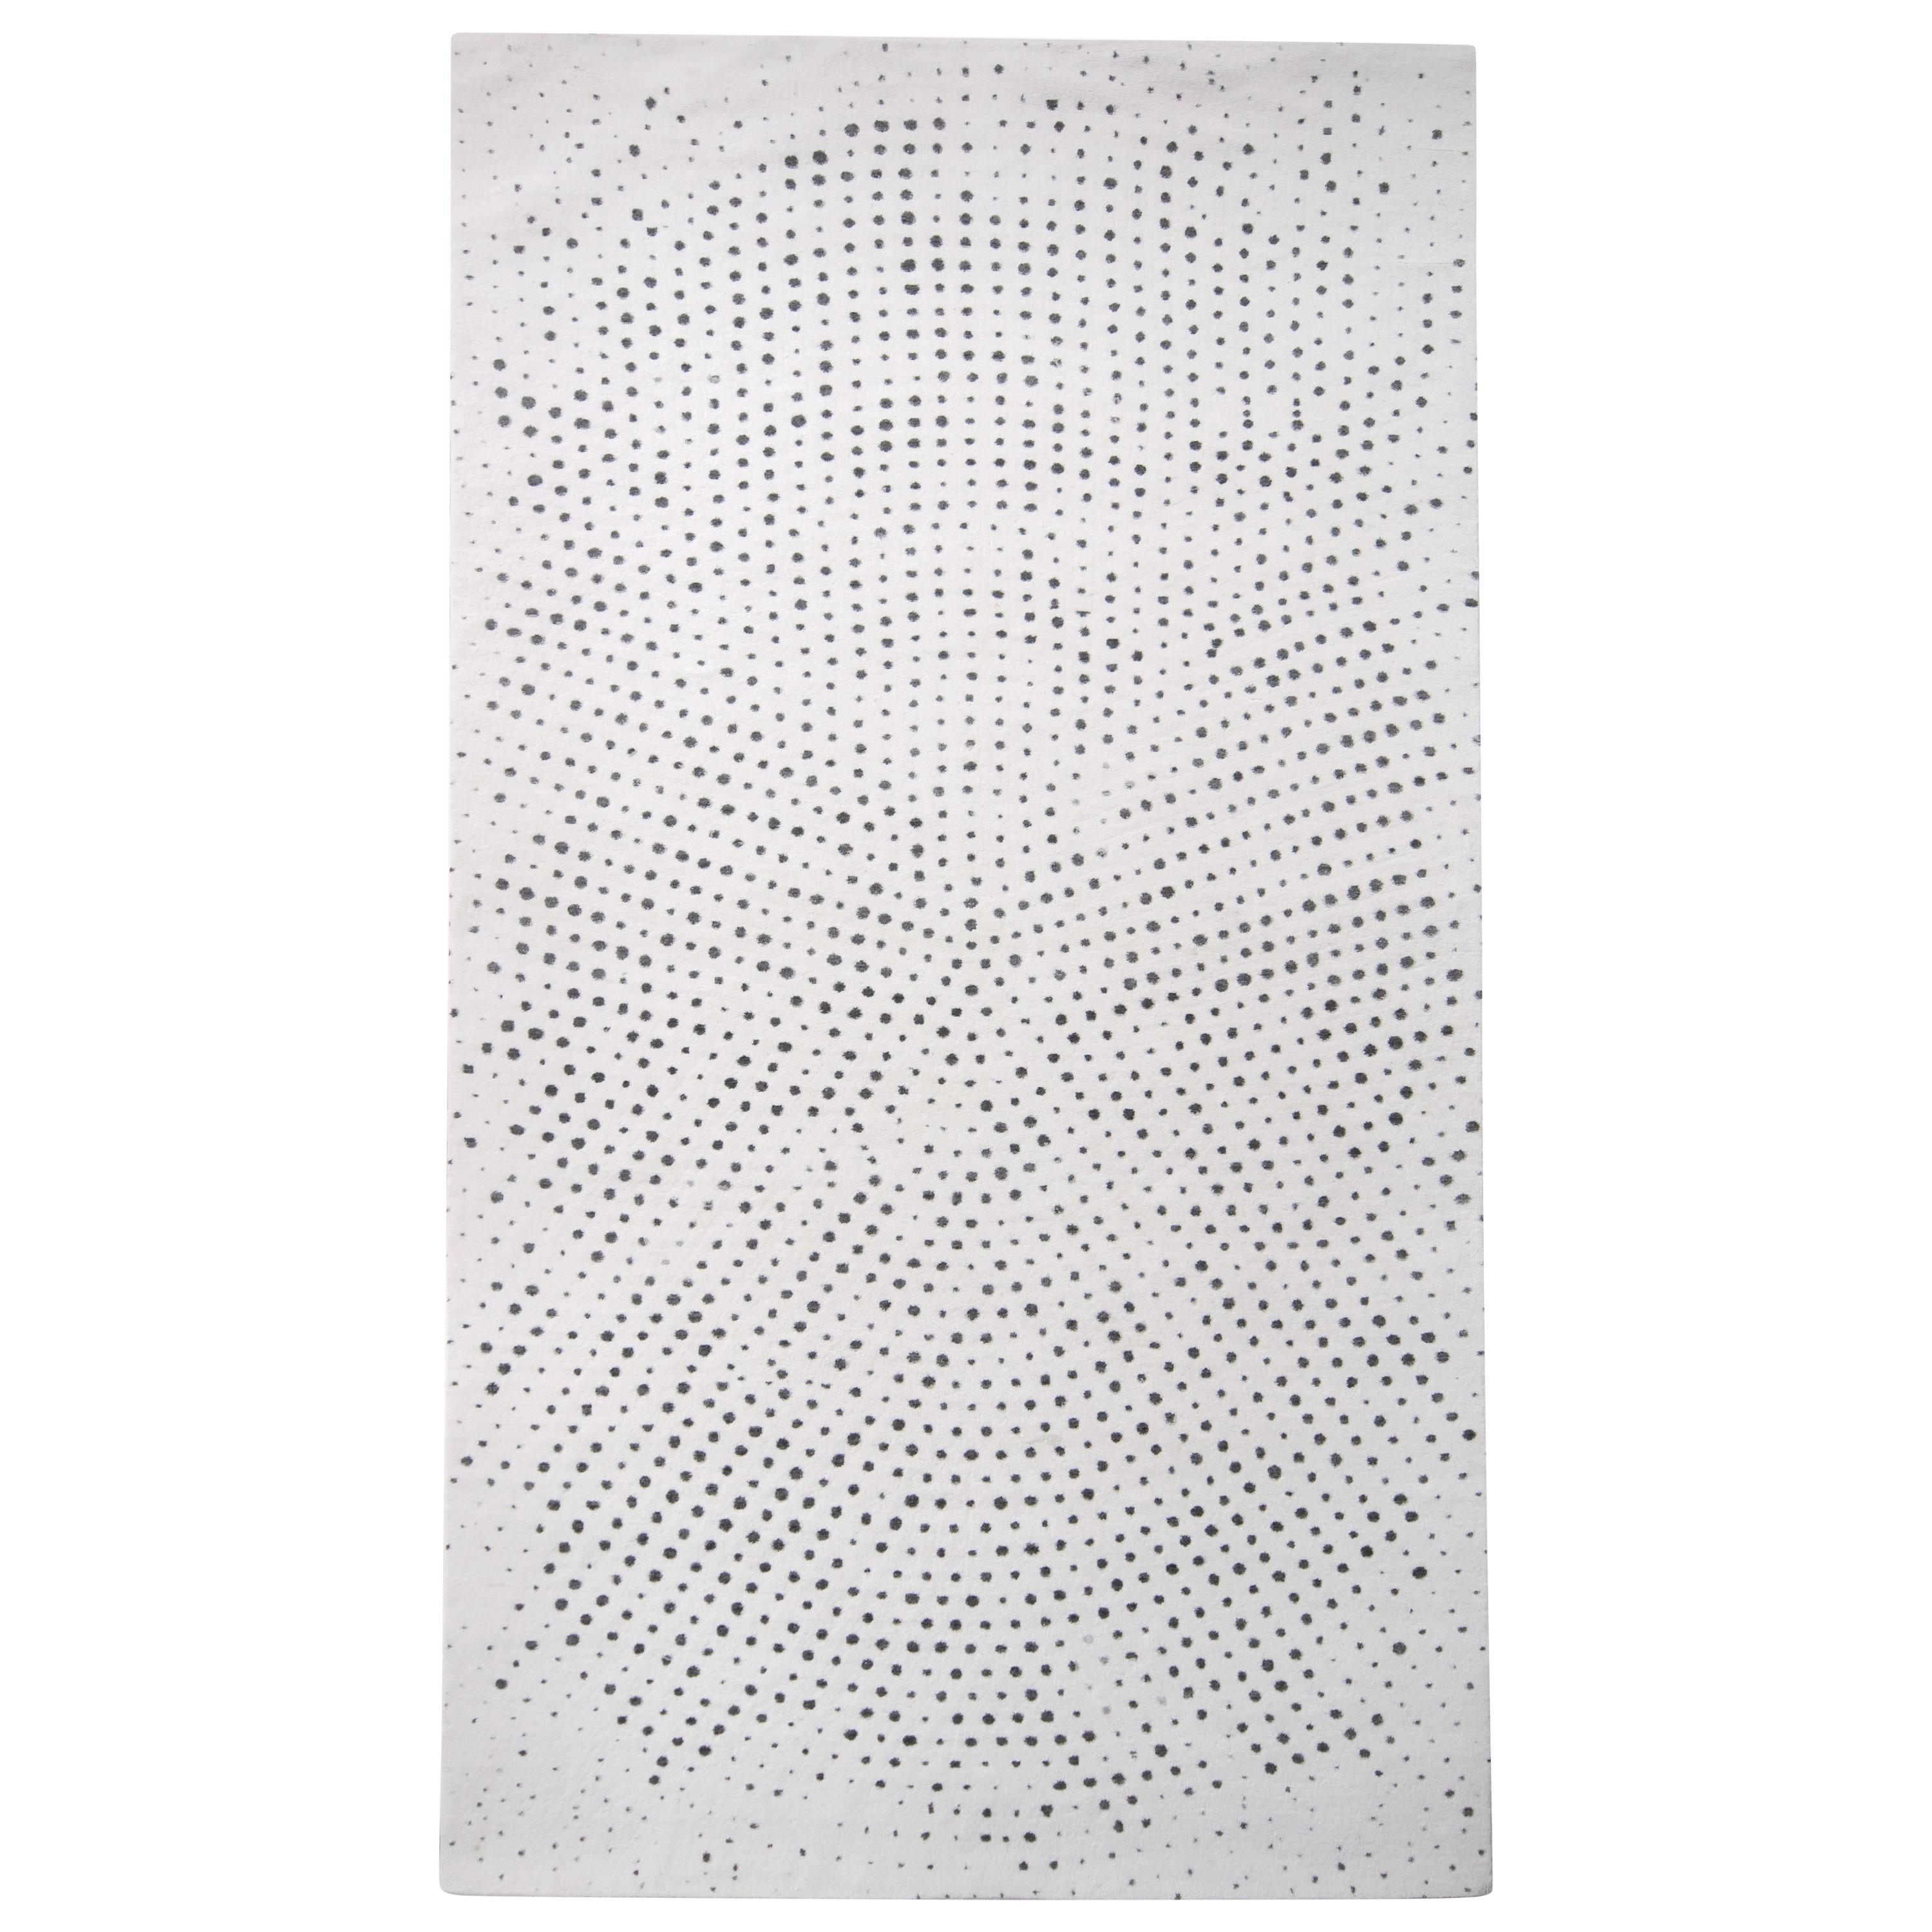 Rug & Kilim's Modern Rug in White Black All-Over Dot Pattern